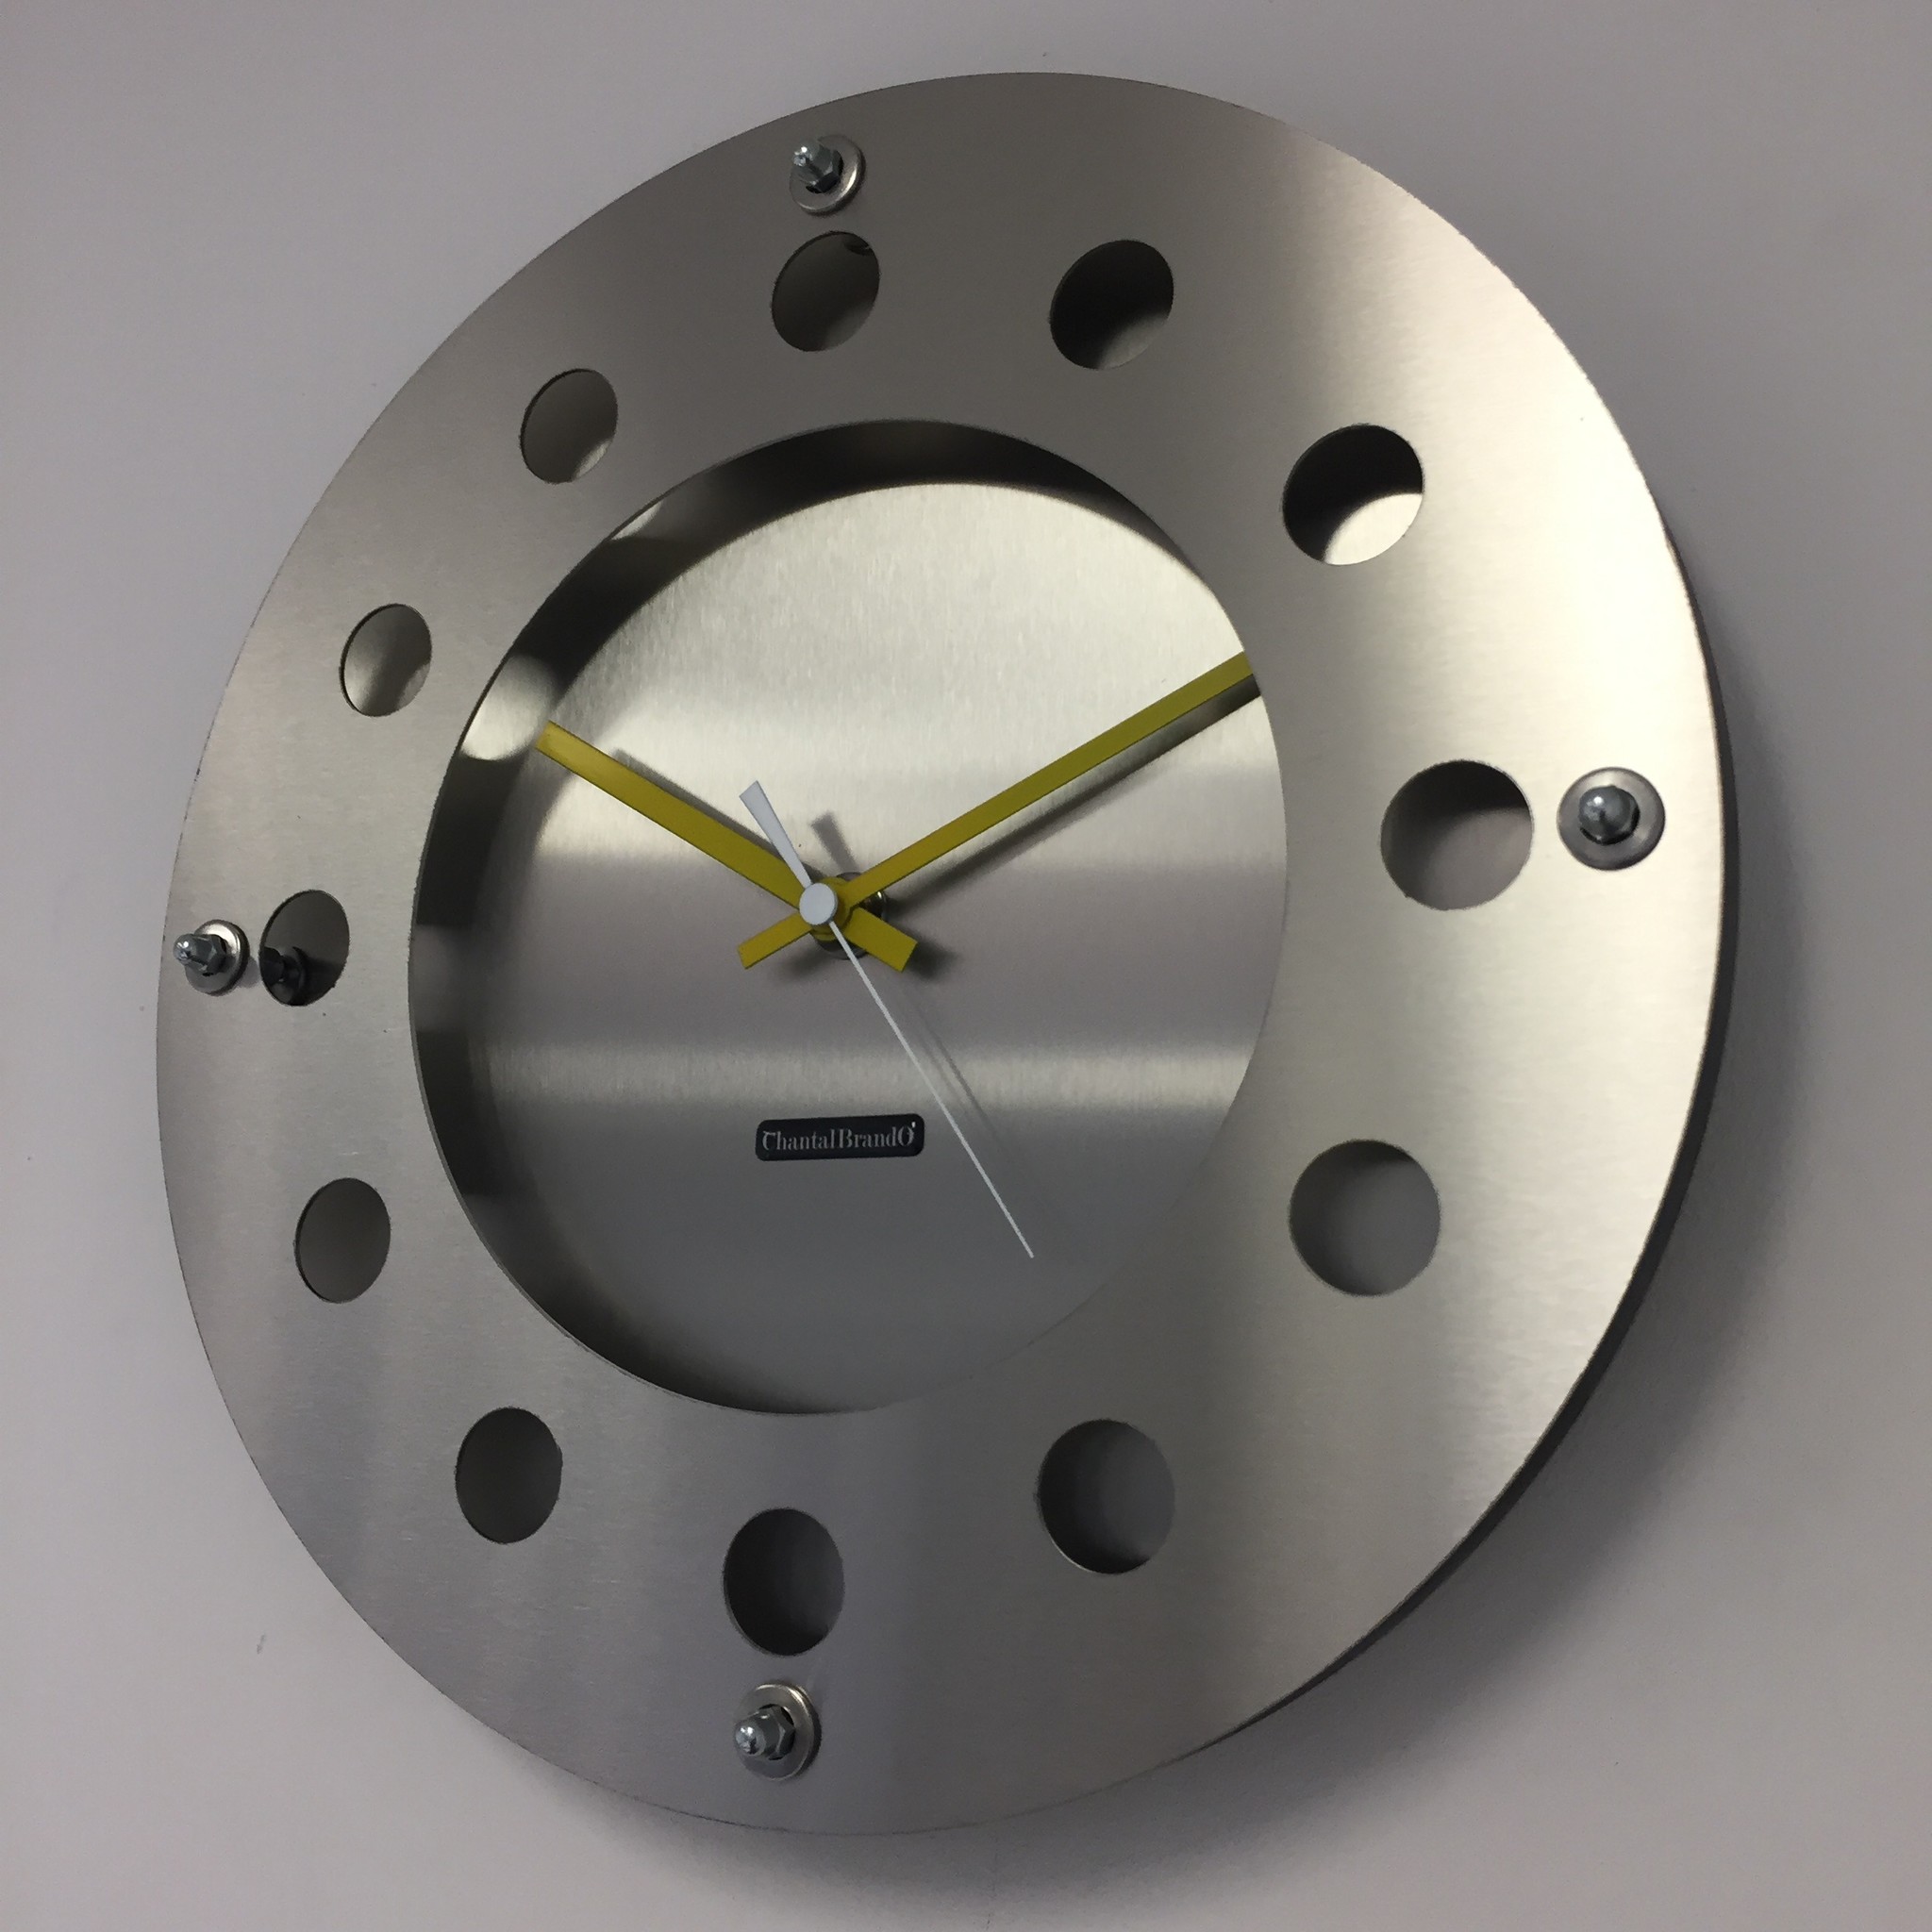 ChantalBrandO Design - Wall clock Mecanica CB 202107 Modern Dutch Design Handmade 40 cm